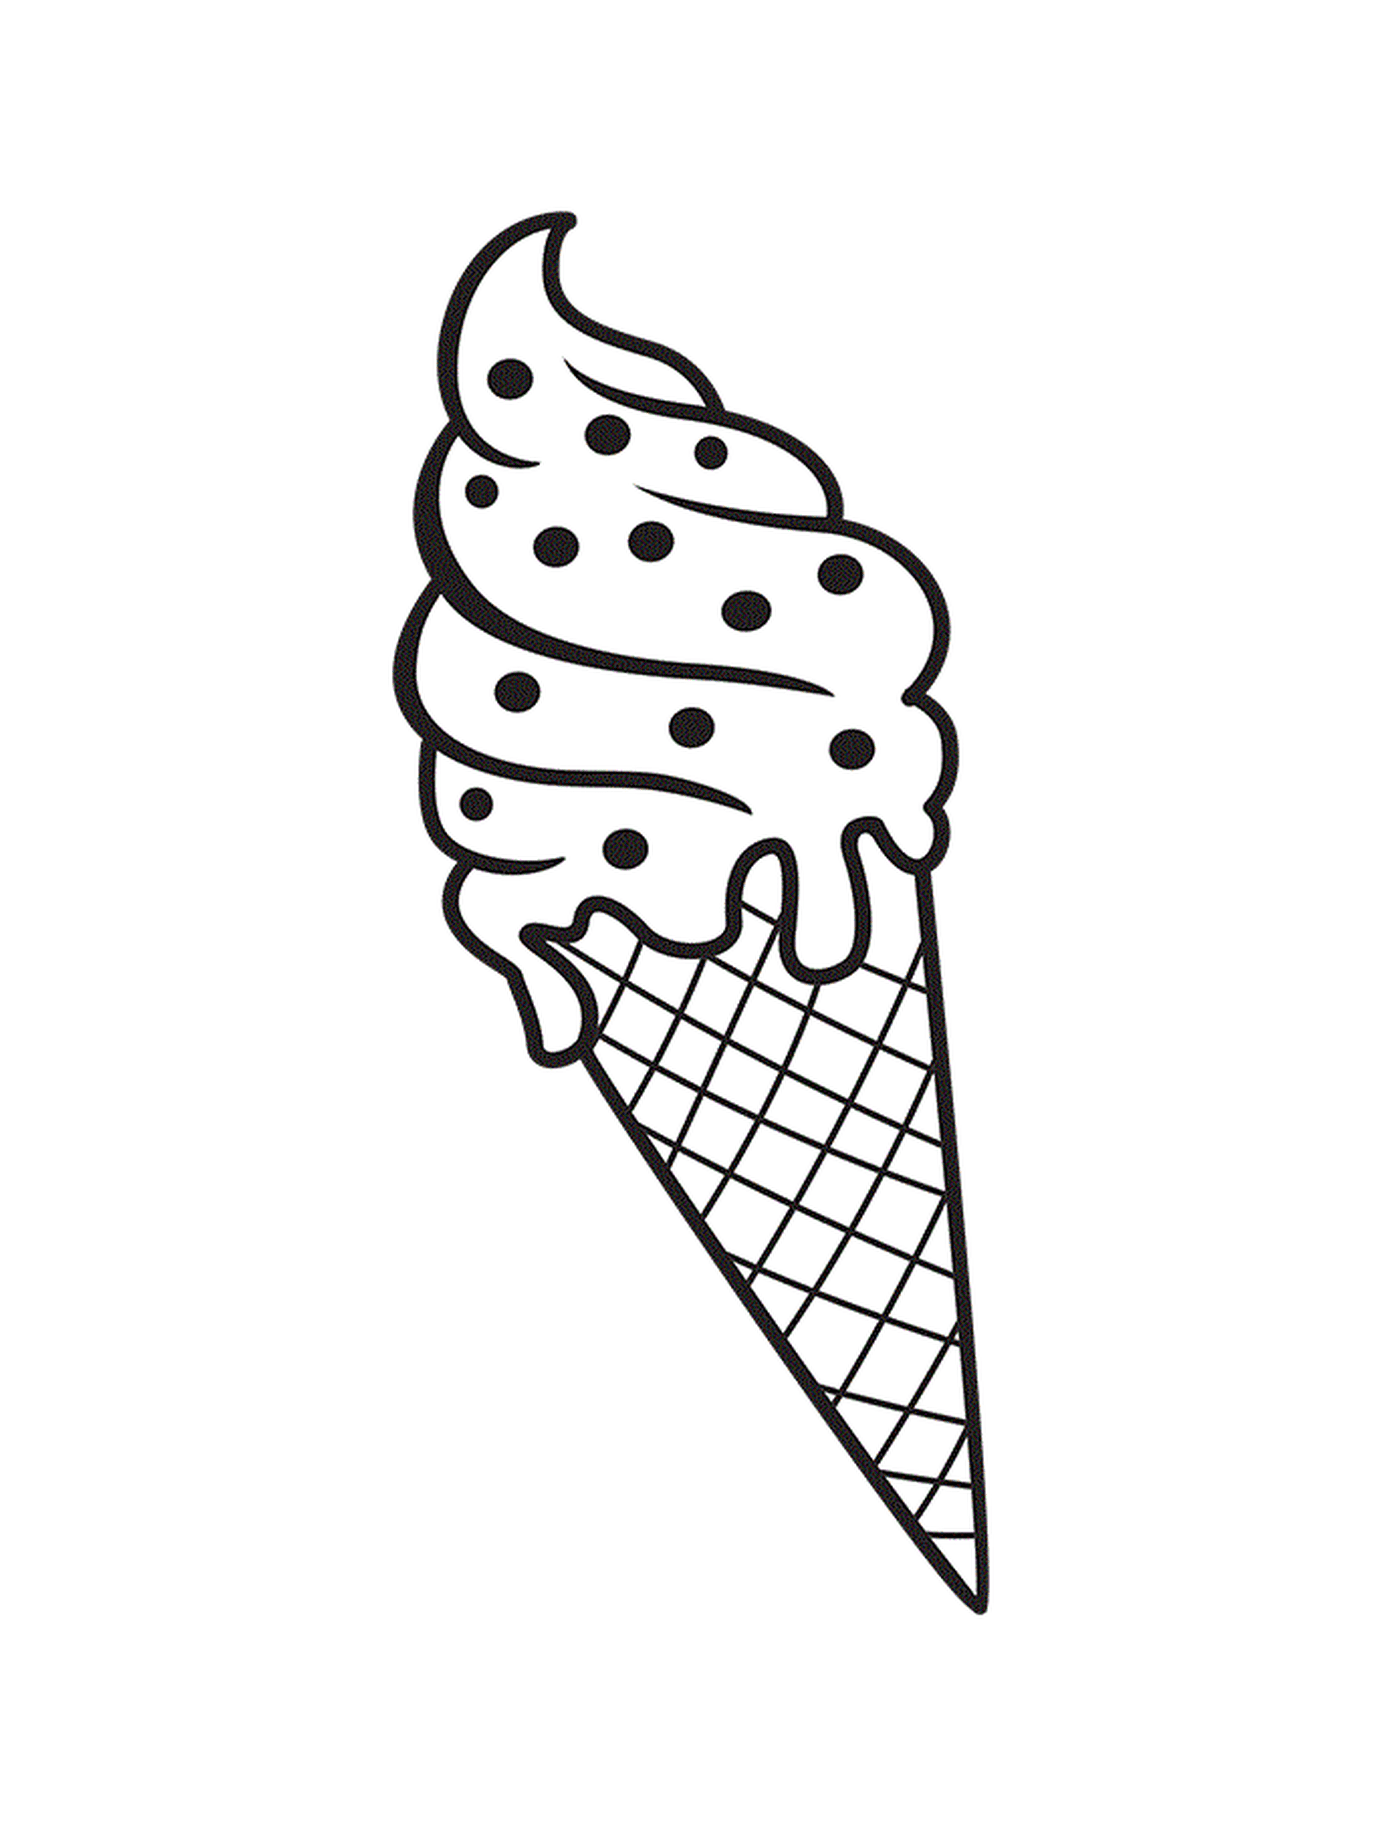  暑假时 一大块巧克力冰淇淋冰淇淋甜甜筒 